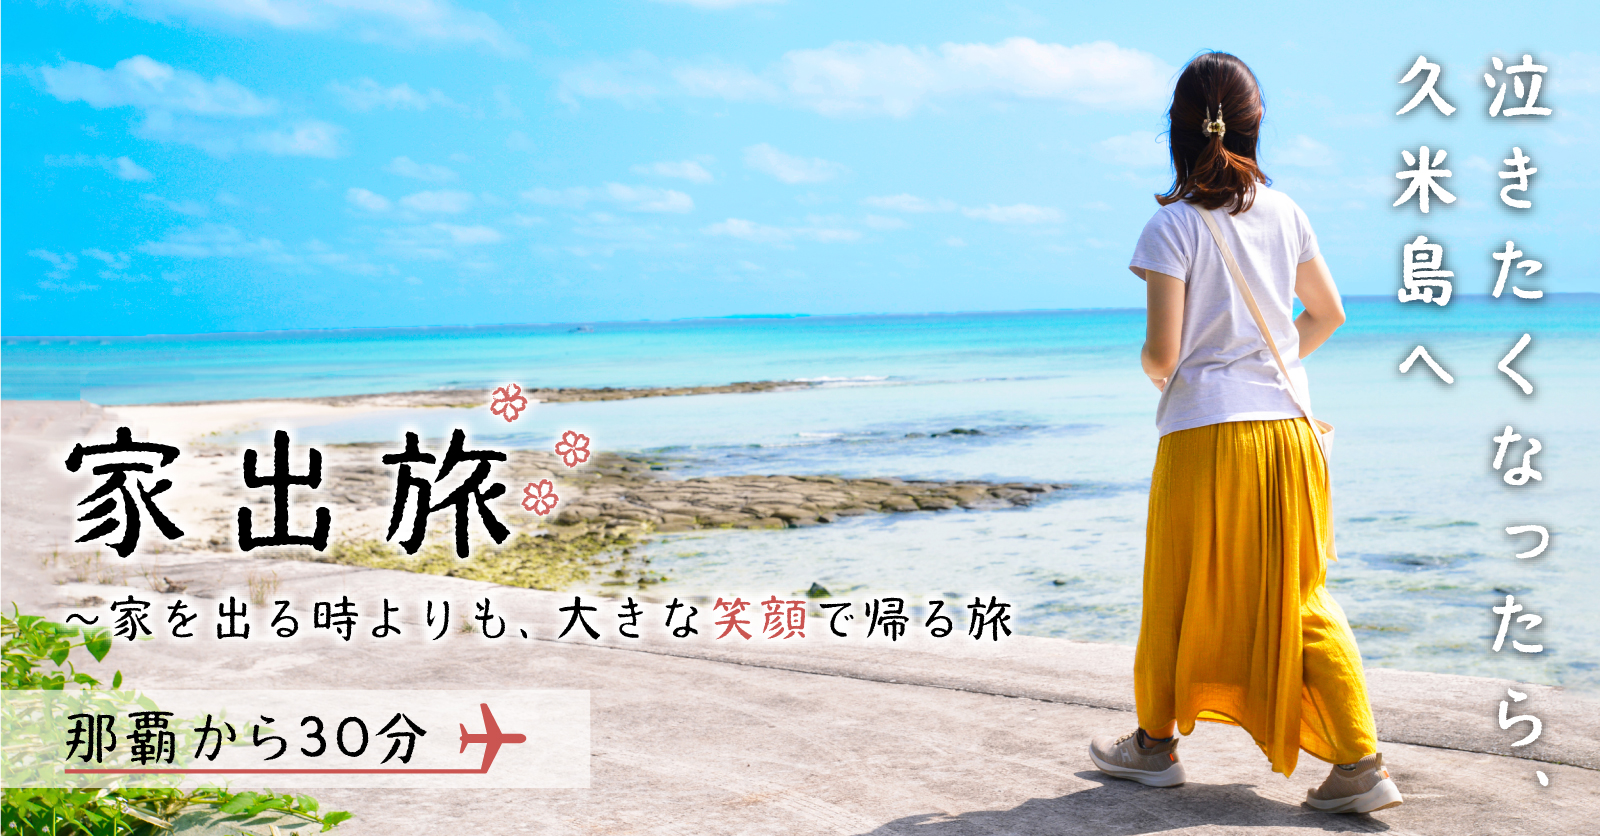 沖縄県 久米島観光協会様のSNS広告運用支援を実施